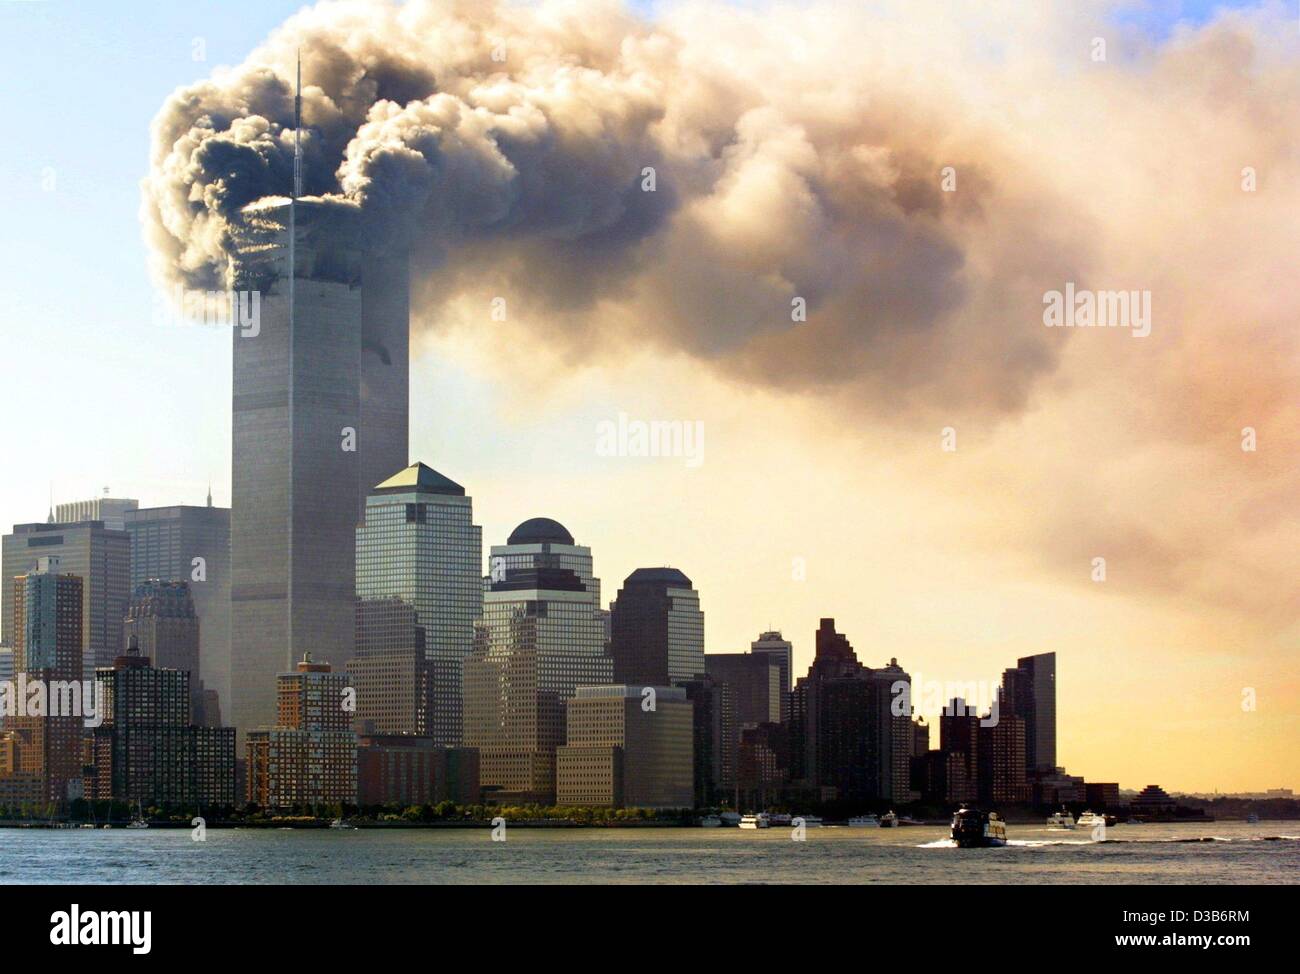 (Afp) - Les nuages de fumée s'élèvent de la combustion étages juste avant que les tours jumelles du World Trade Center à New York l'effondrement, le 11 septembre 2001. 2 823 personnes ont été tuées lorsque des terroristes islamiques s'est écrasé sur le WTC avec des pirates de l'avion. Avec 189 morts dans l'attaque du Pentagone de pla Banque D'Images